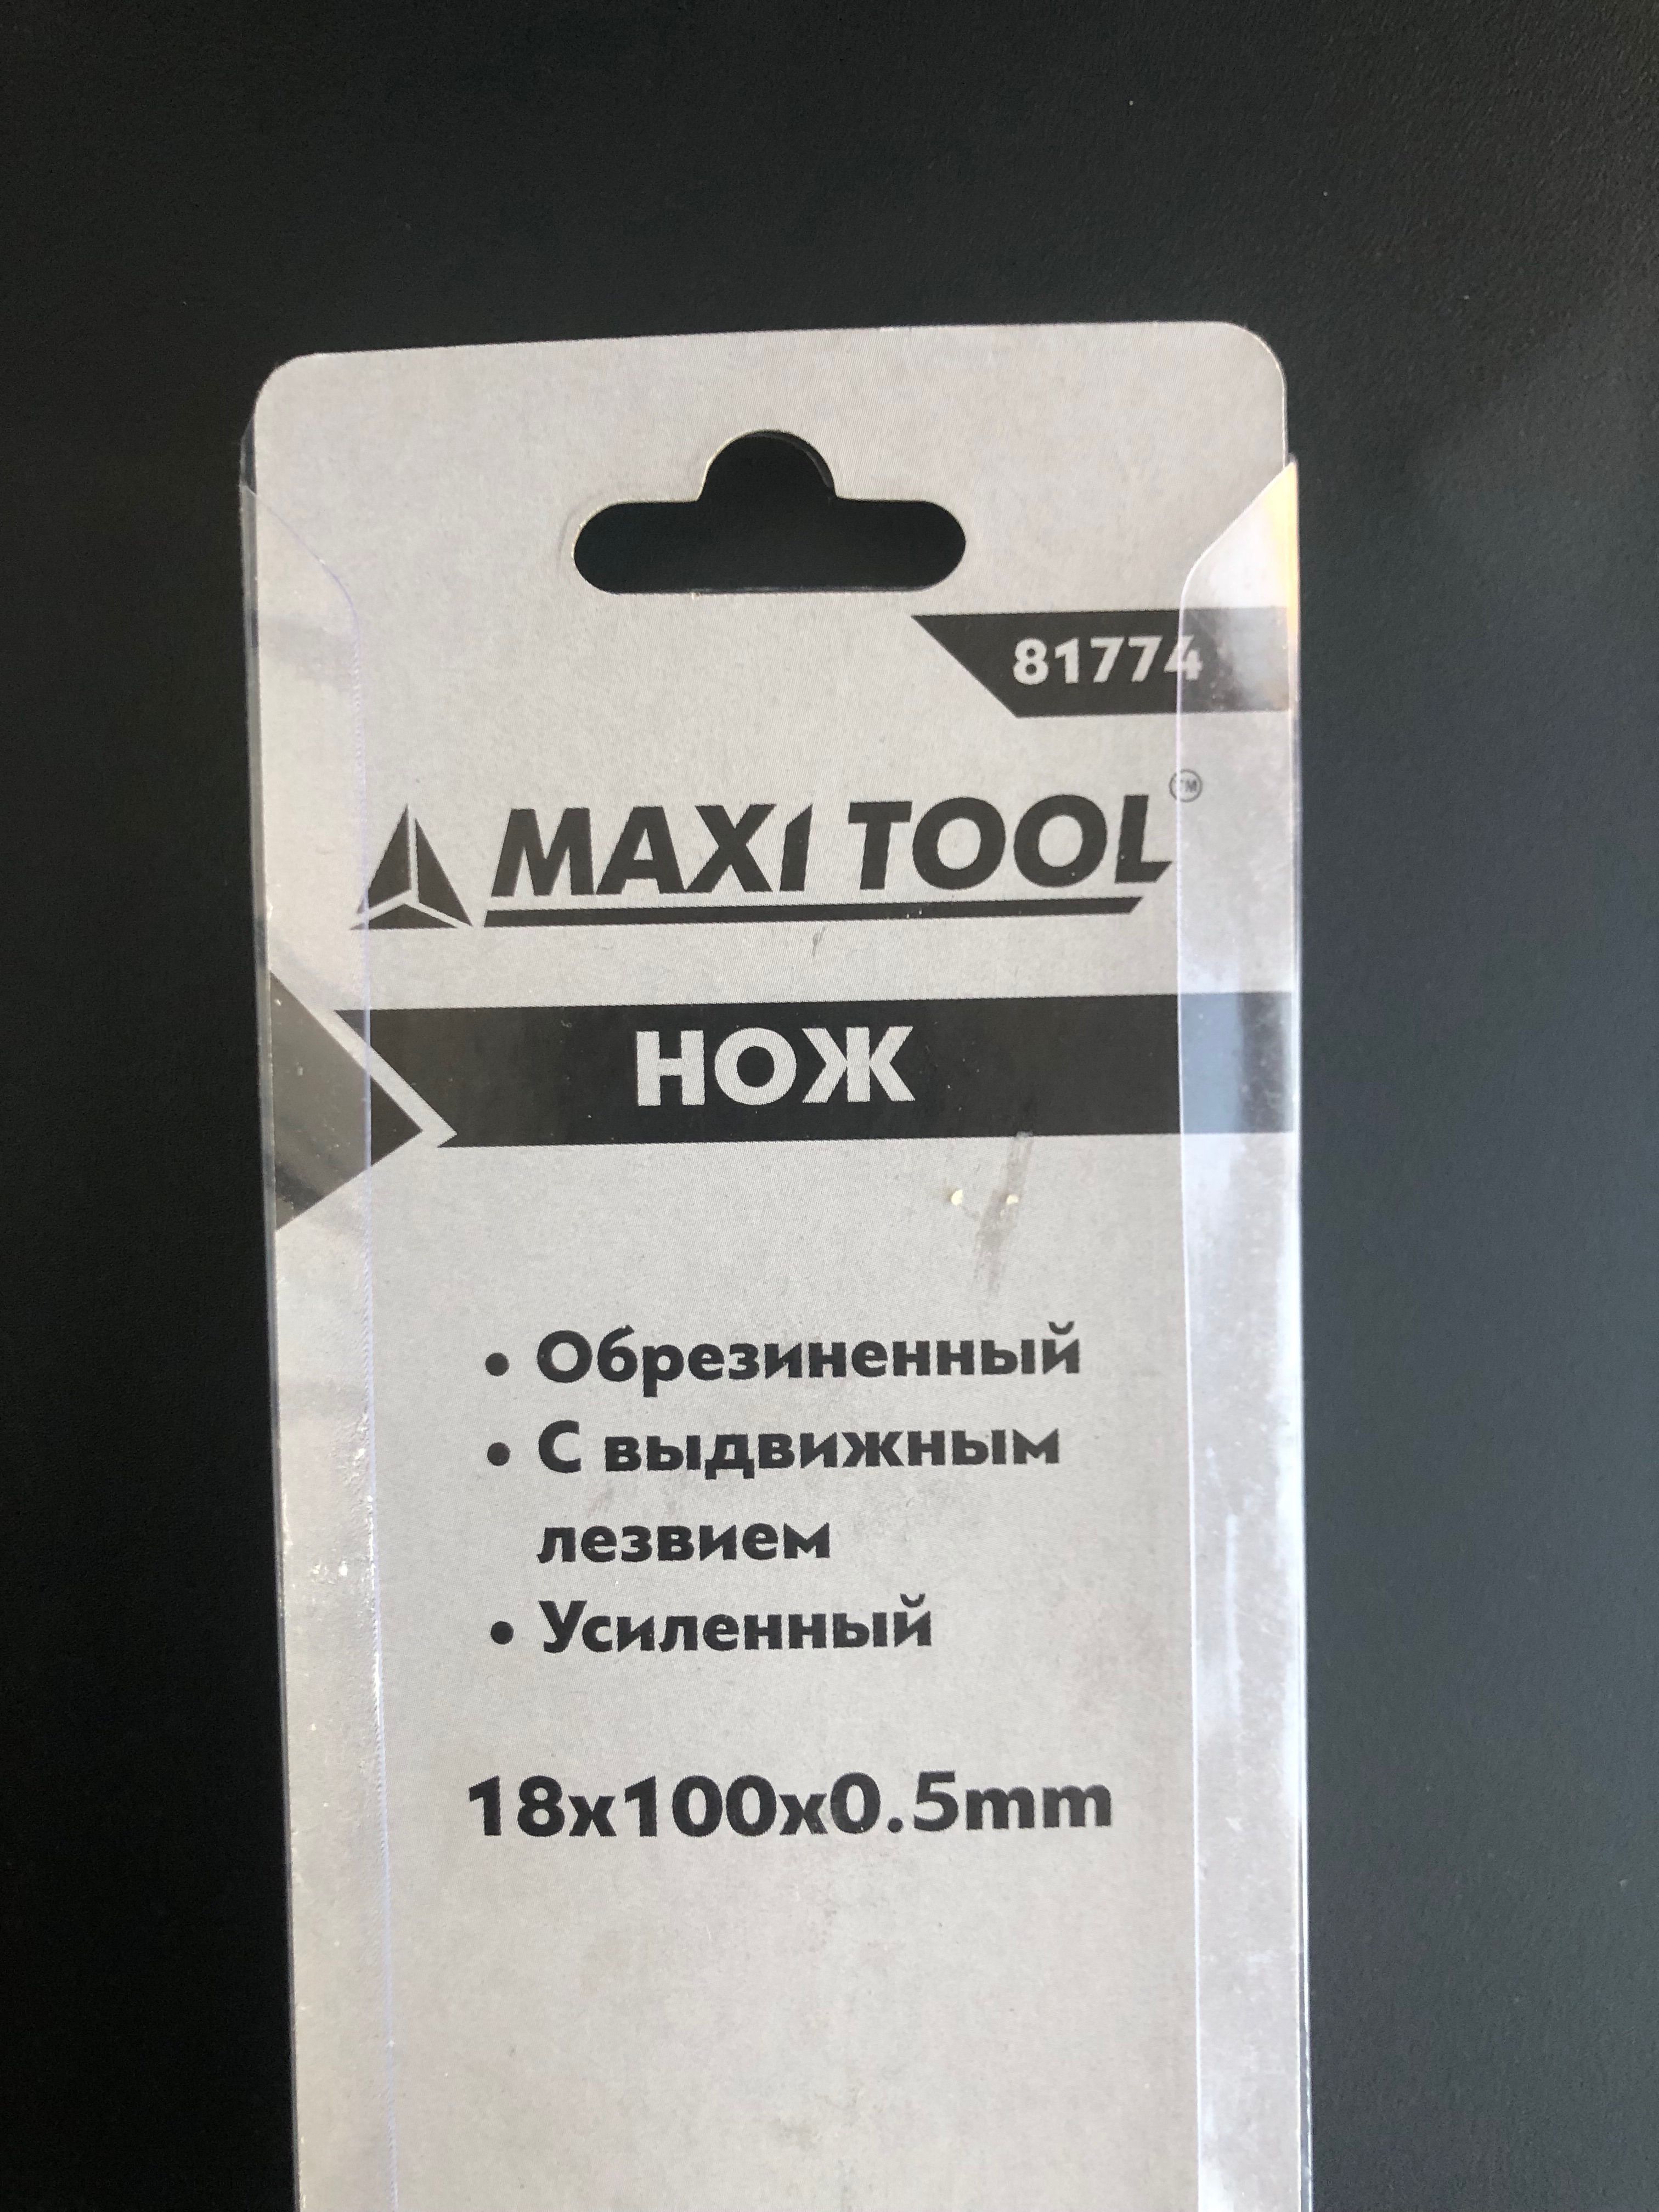 Maxi tool. Maxi Tool инструмент. Набор магнитных бит Maxi Tool. Отвертка MAXITOOL 89452. 81436 Maxi Tool.